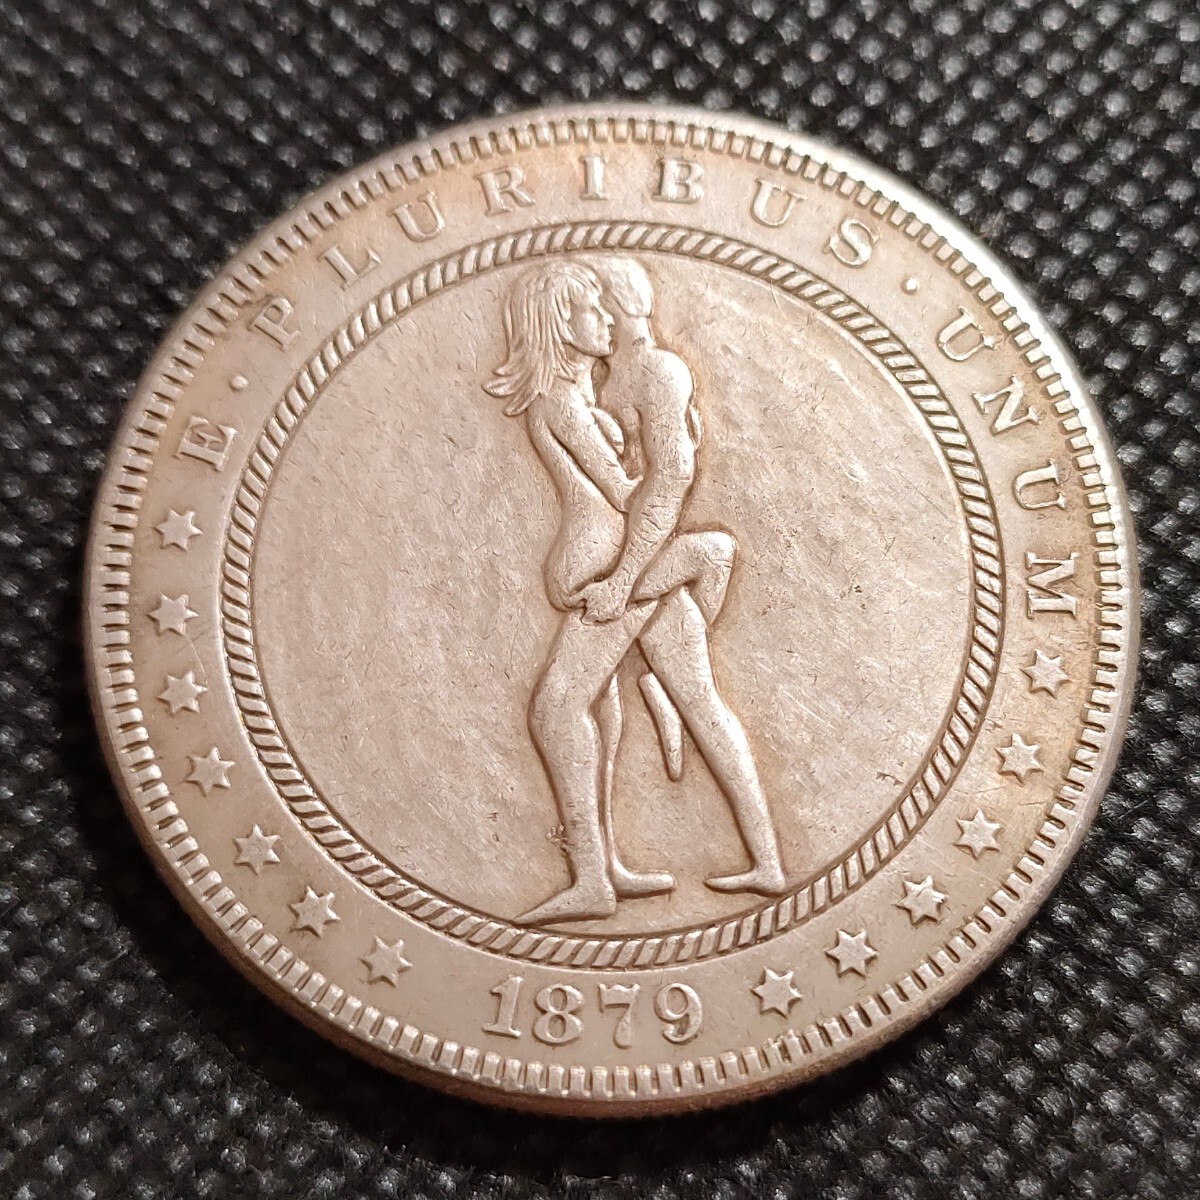 4829 アメリカ古銭 ルンペン貨幣 約38mm イーグル チャレンジコイン ゴルフマーカー コイン アンティーク ホーボーの画像1